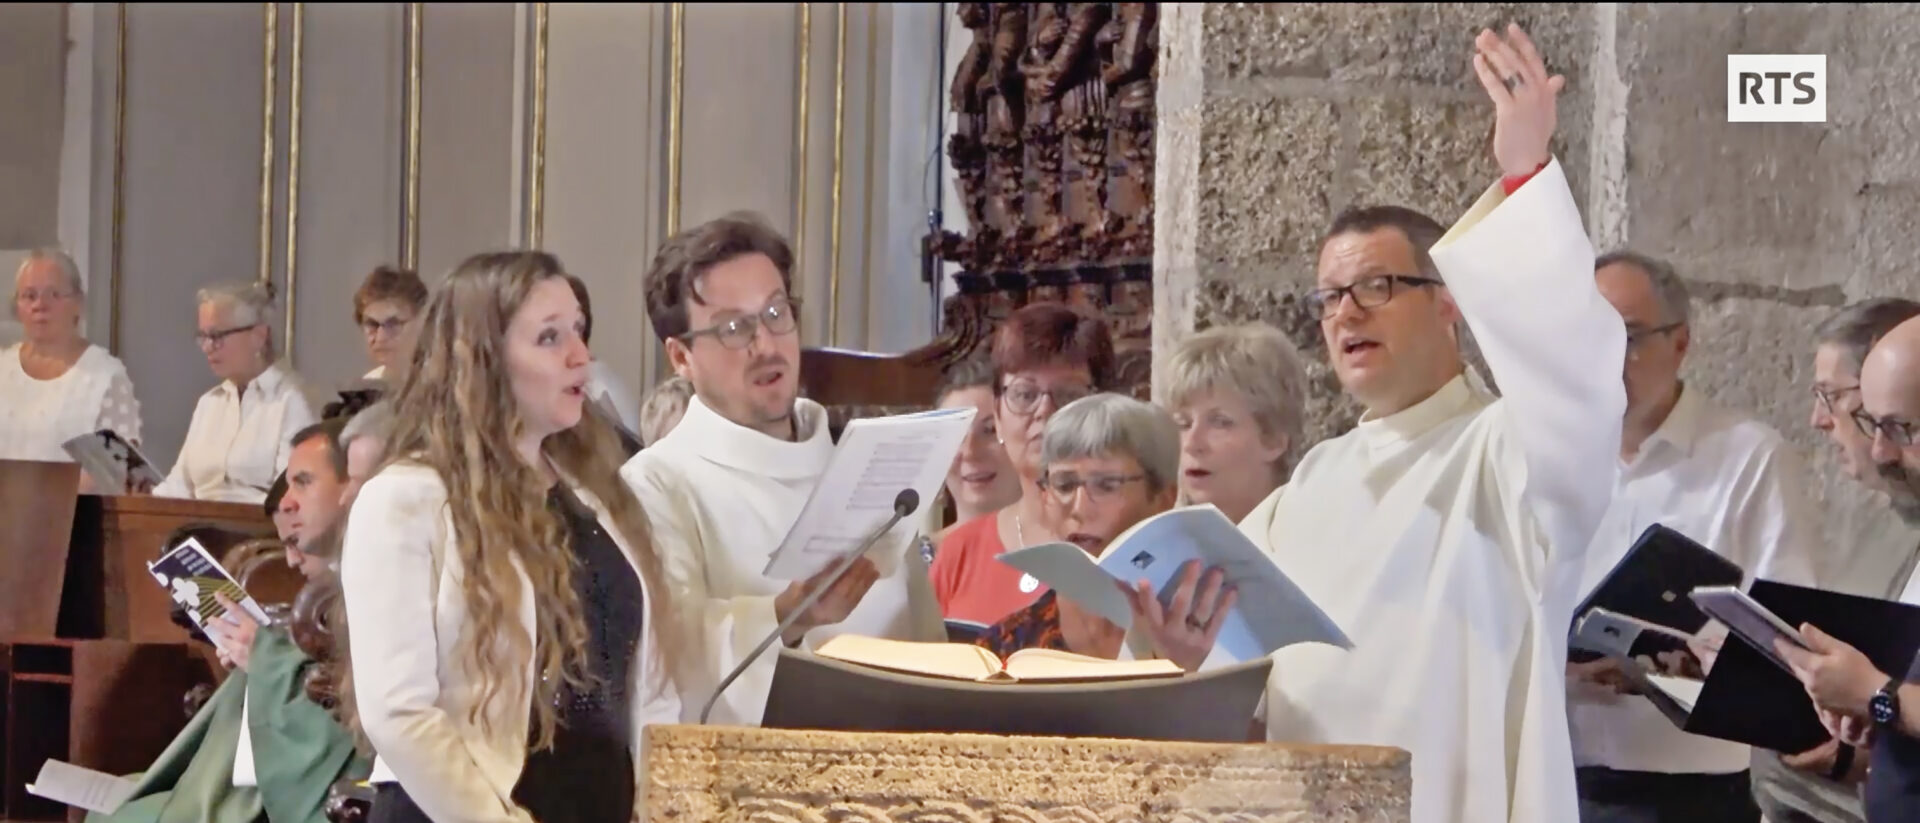 Messe sur RTS 2: les solistes de la Semaine romande de Musique et de Liturgie à Saint-Maurice | © RTS